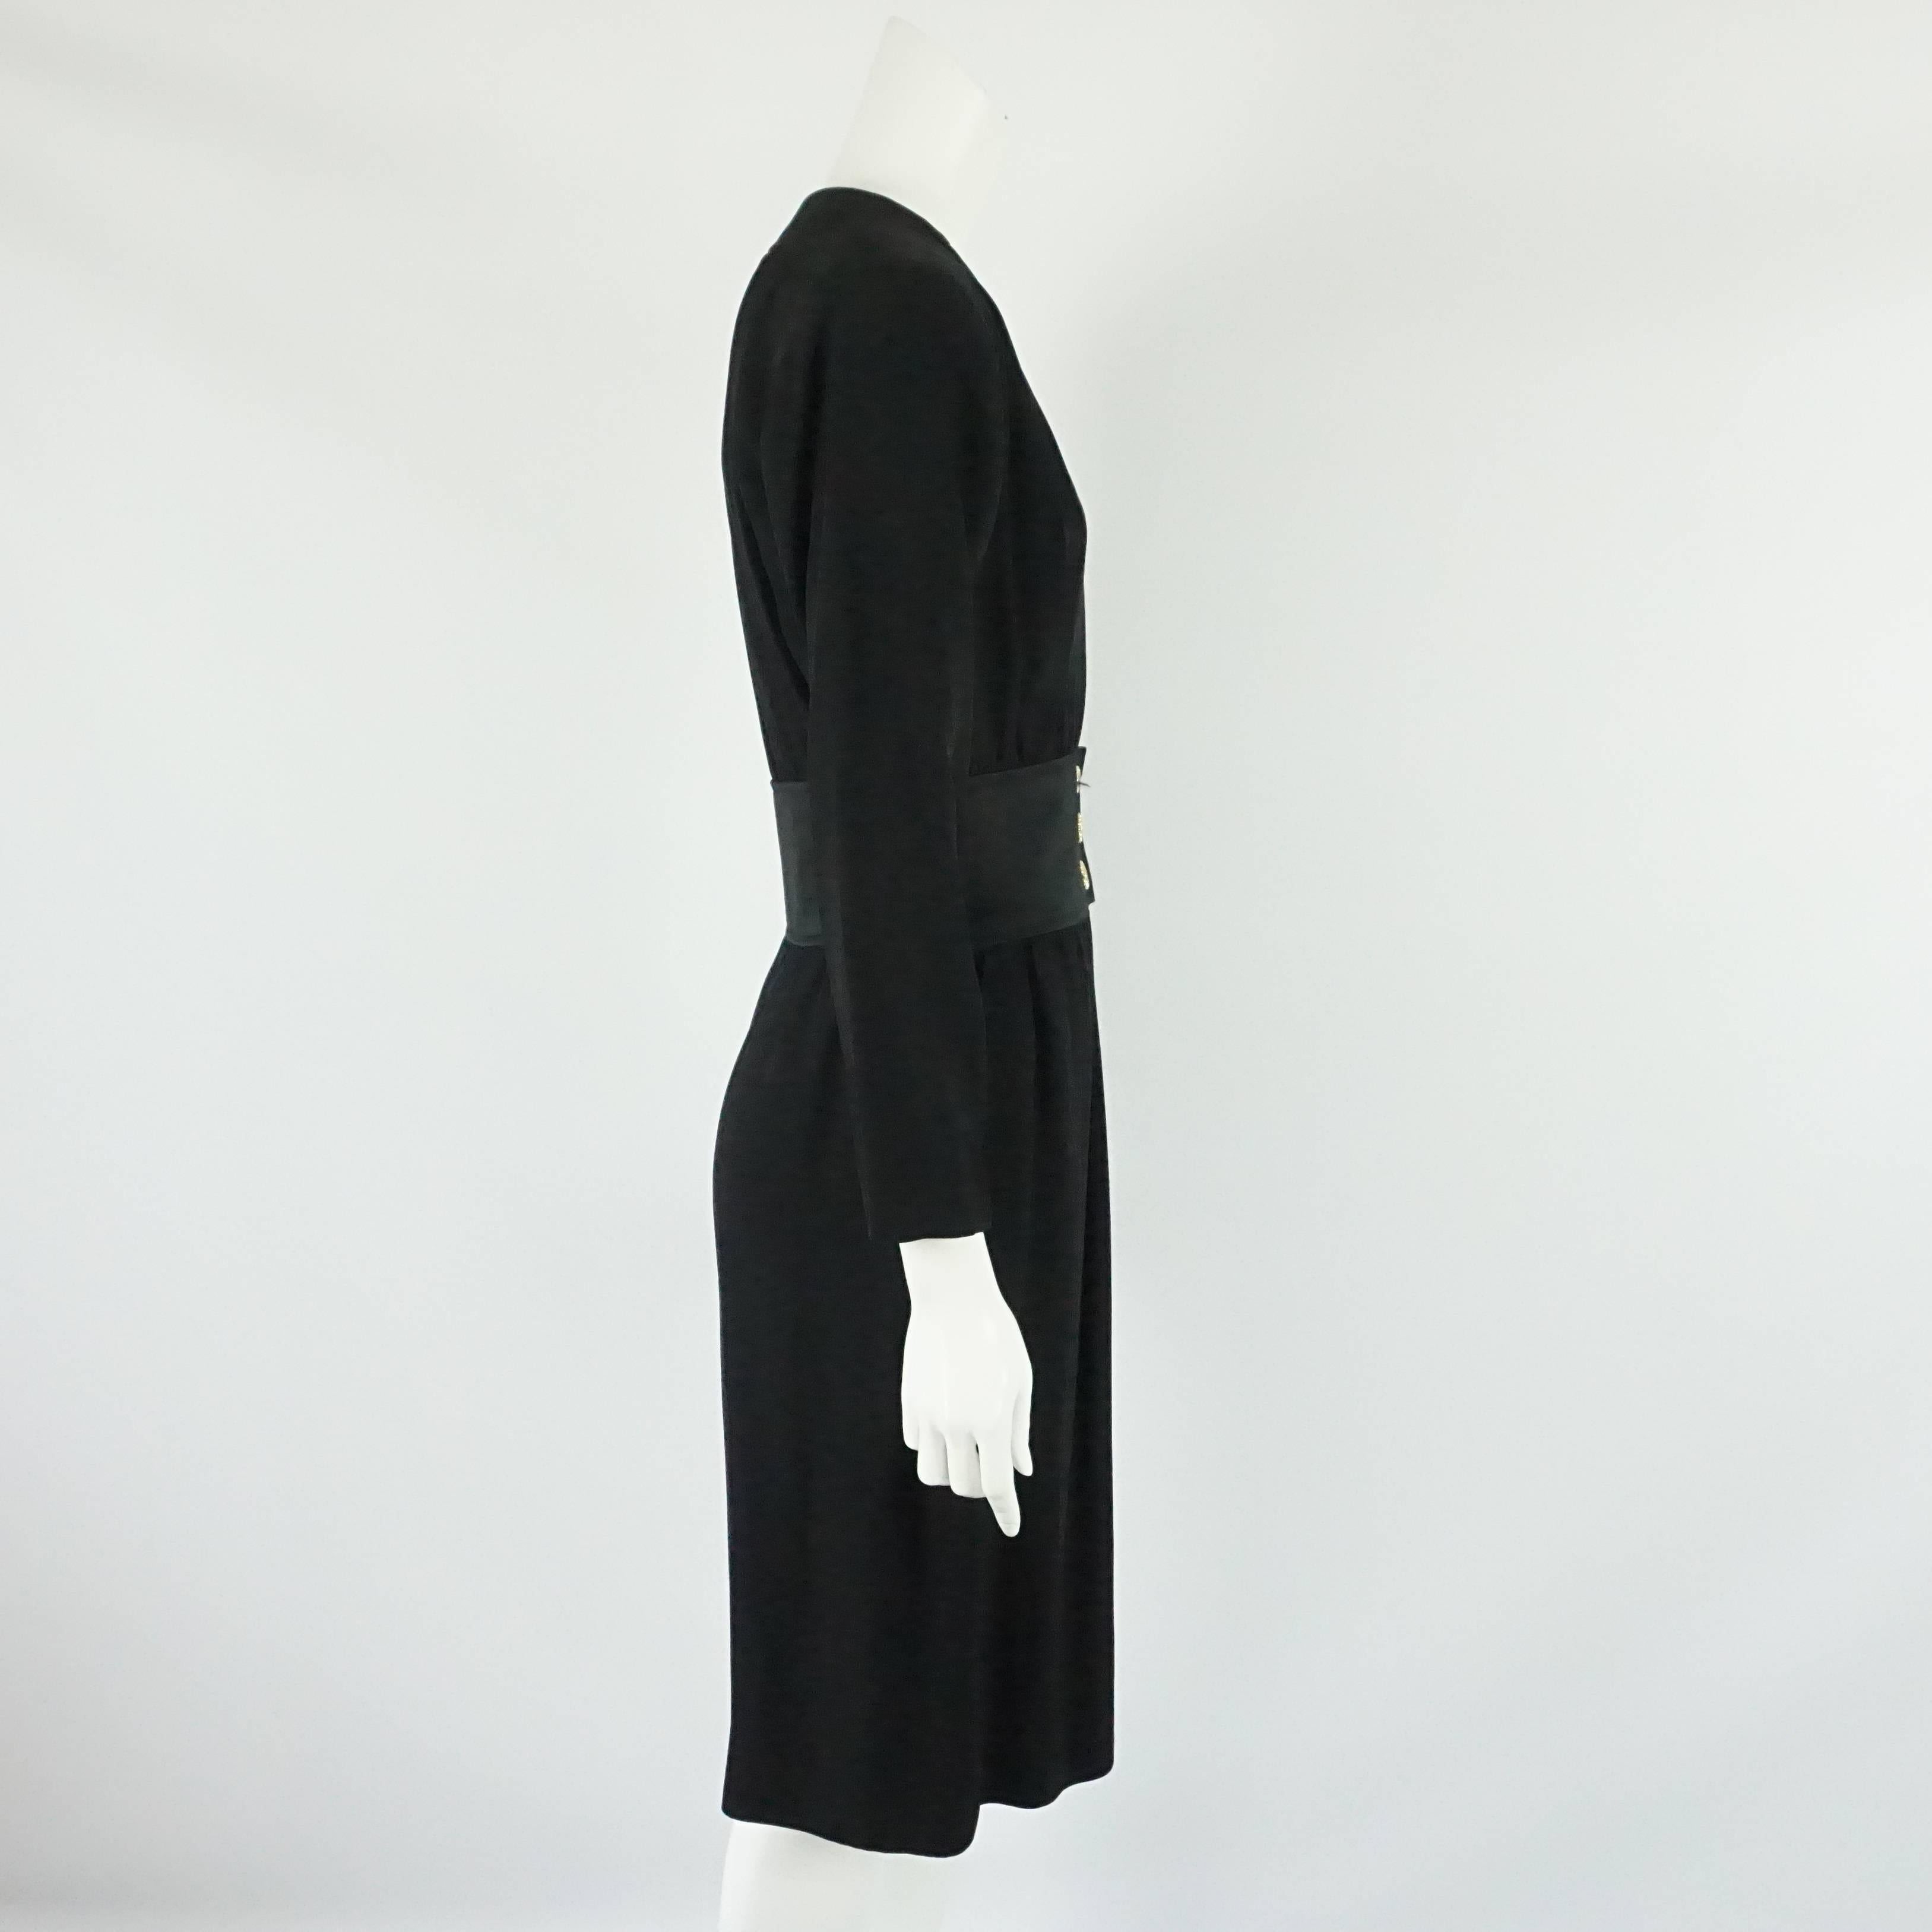 Yves Saint Laurent - Robe à manches longues en crêpe de laine noir - 40 ans - circa 70's  Cette spectaculaire robe vintage YSL a un décolleté plongeant avec quelques crochets et œillets pour la porter plus fermée si désiré, elle a une ceinture en